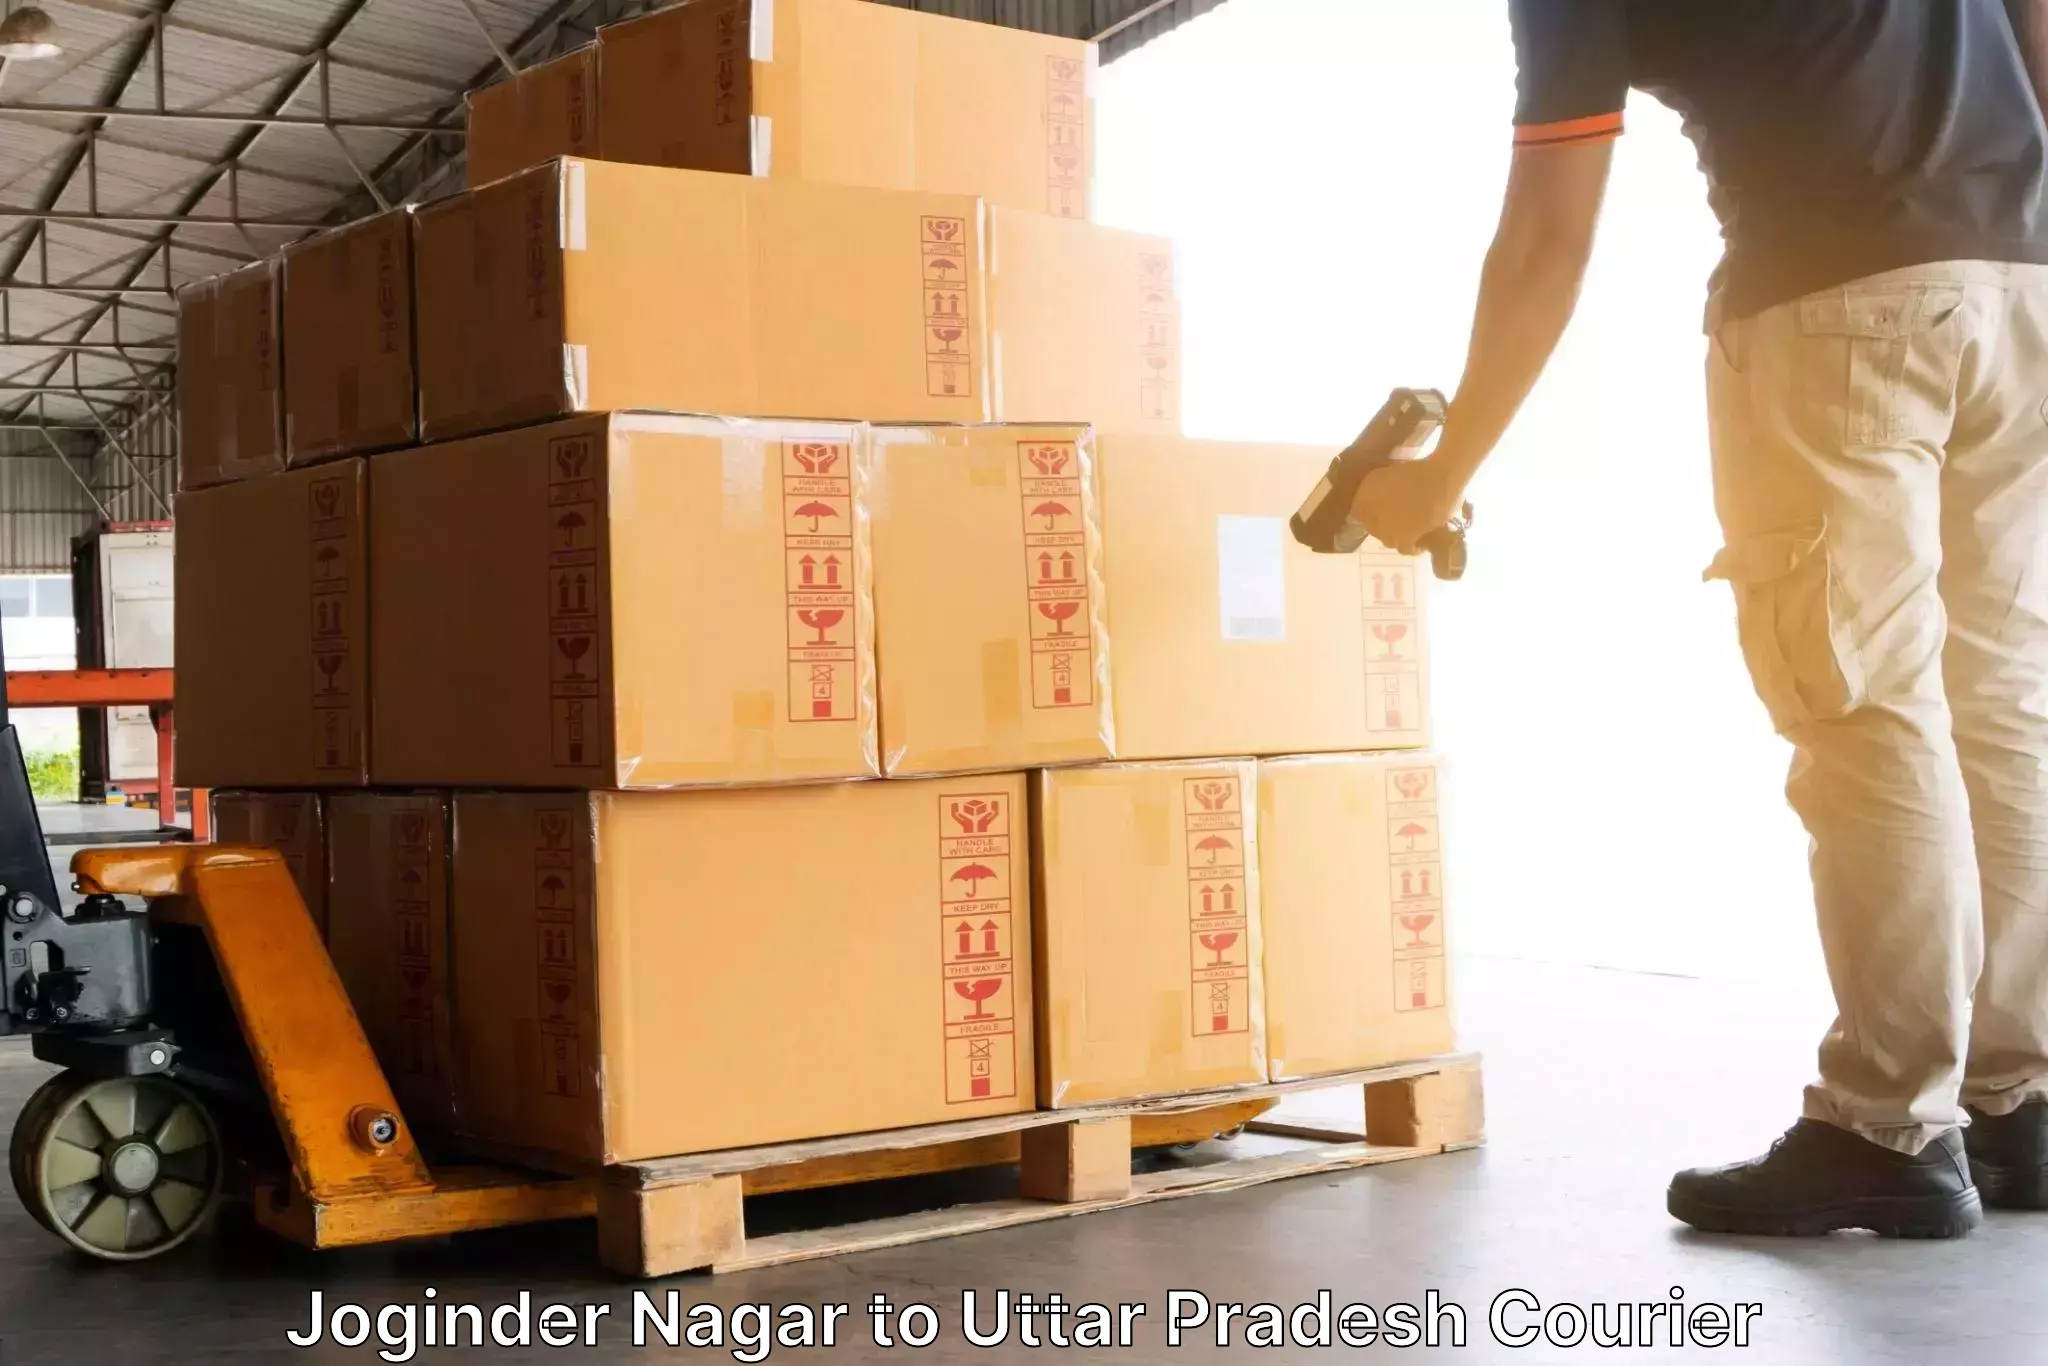 Express delivery capabilities Joginder Nagar to Jalesar